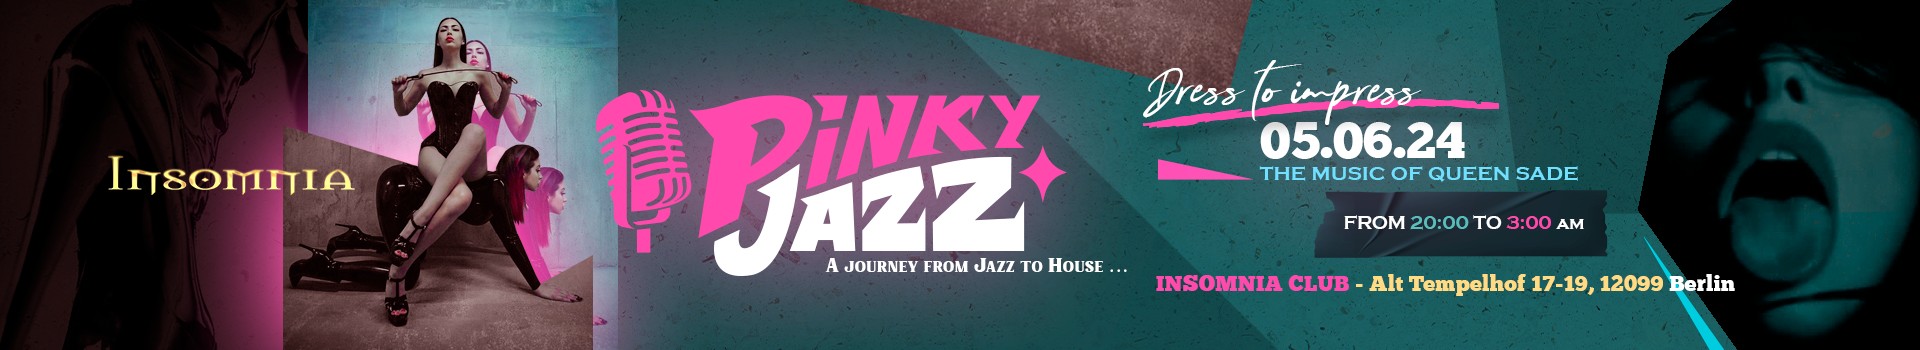 Pinky Jazz - Un viaje del Jazz al House